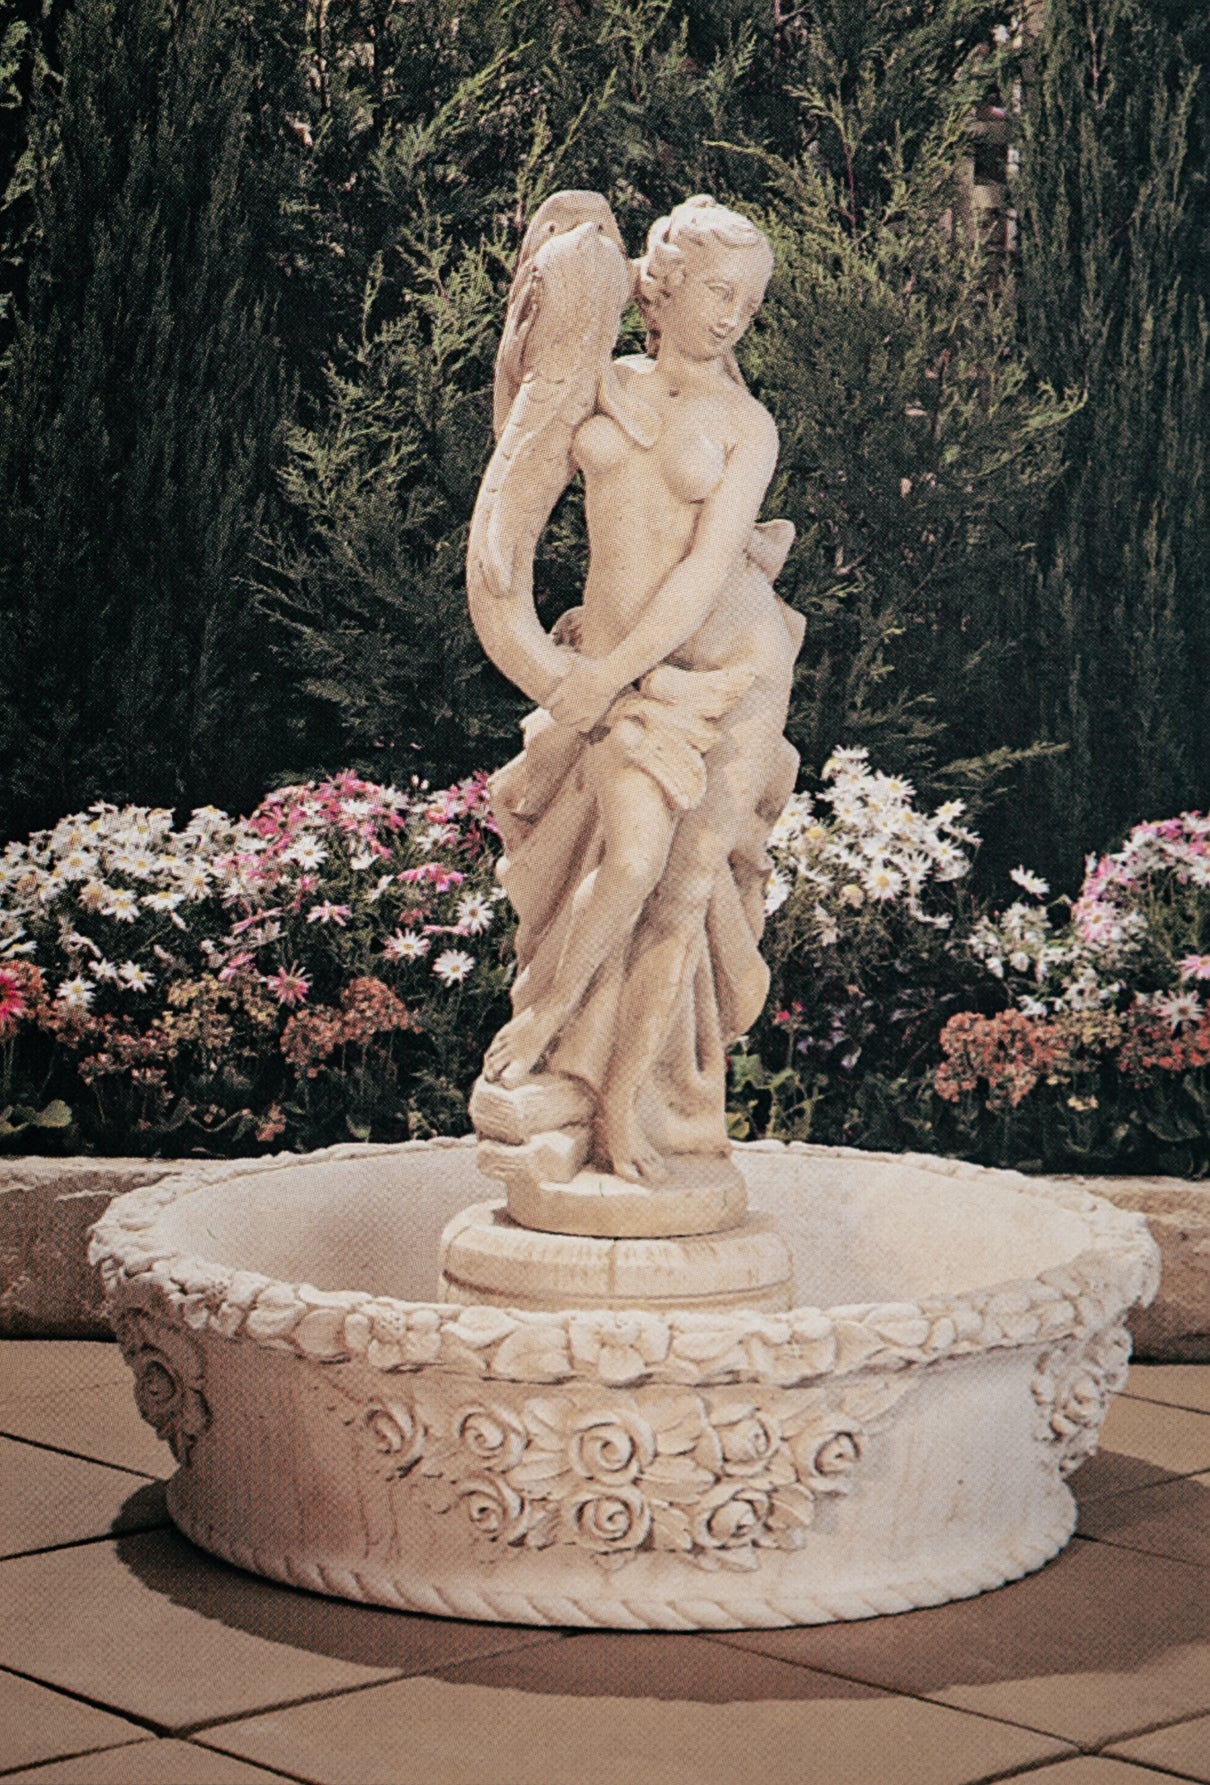 The Aphrodite Concrete Fountain